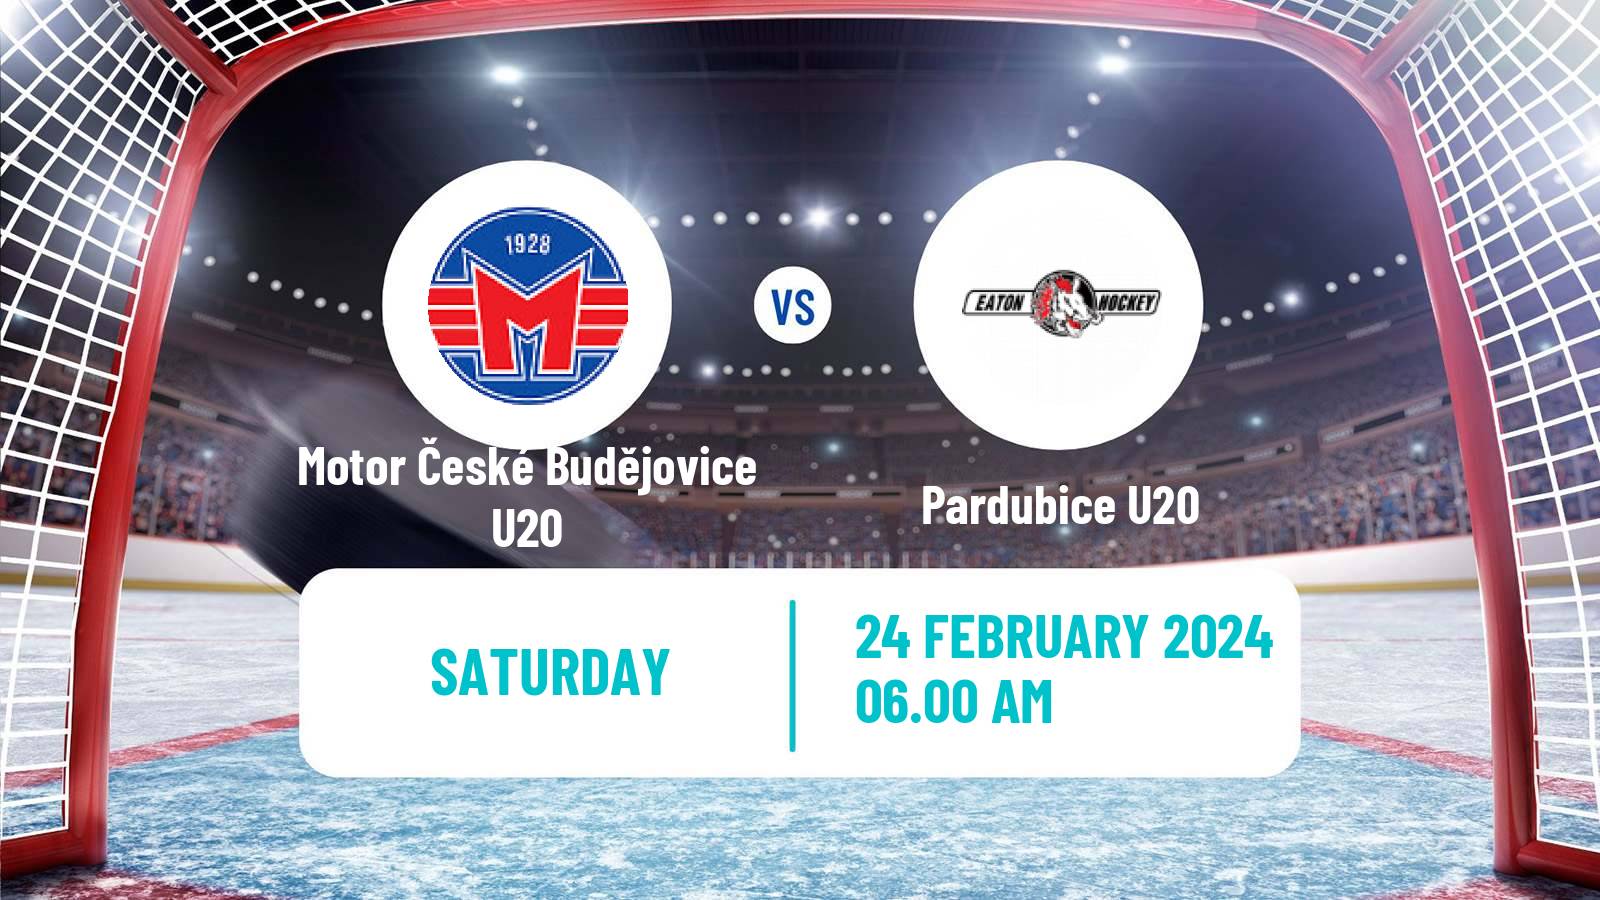 Hockey Czech ELJ Motor České Budějovice U20 - Pardubice U20